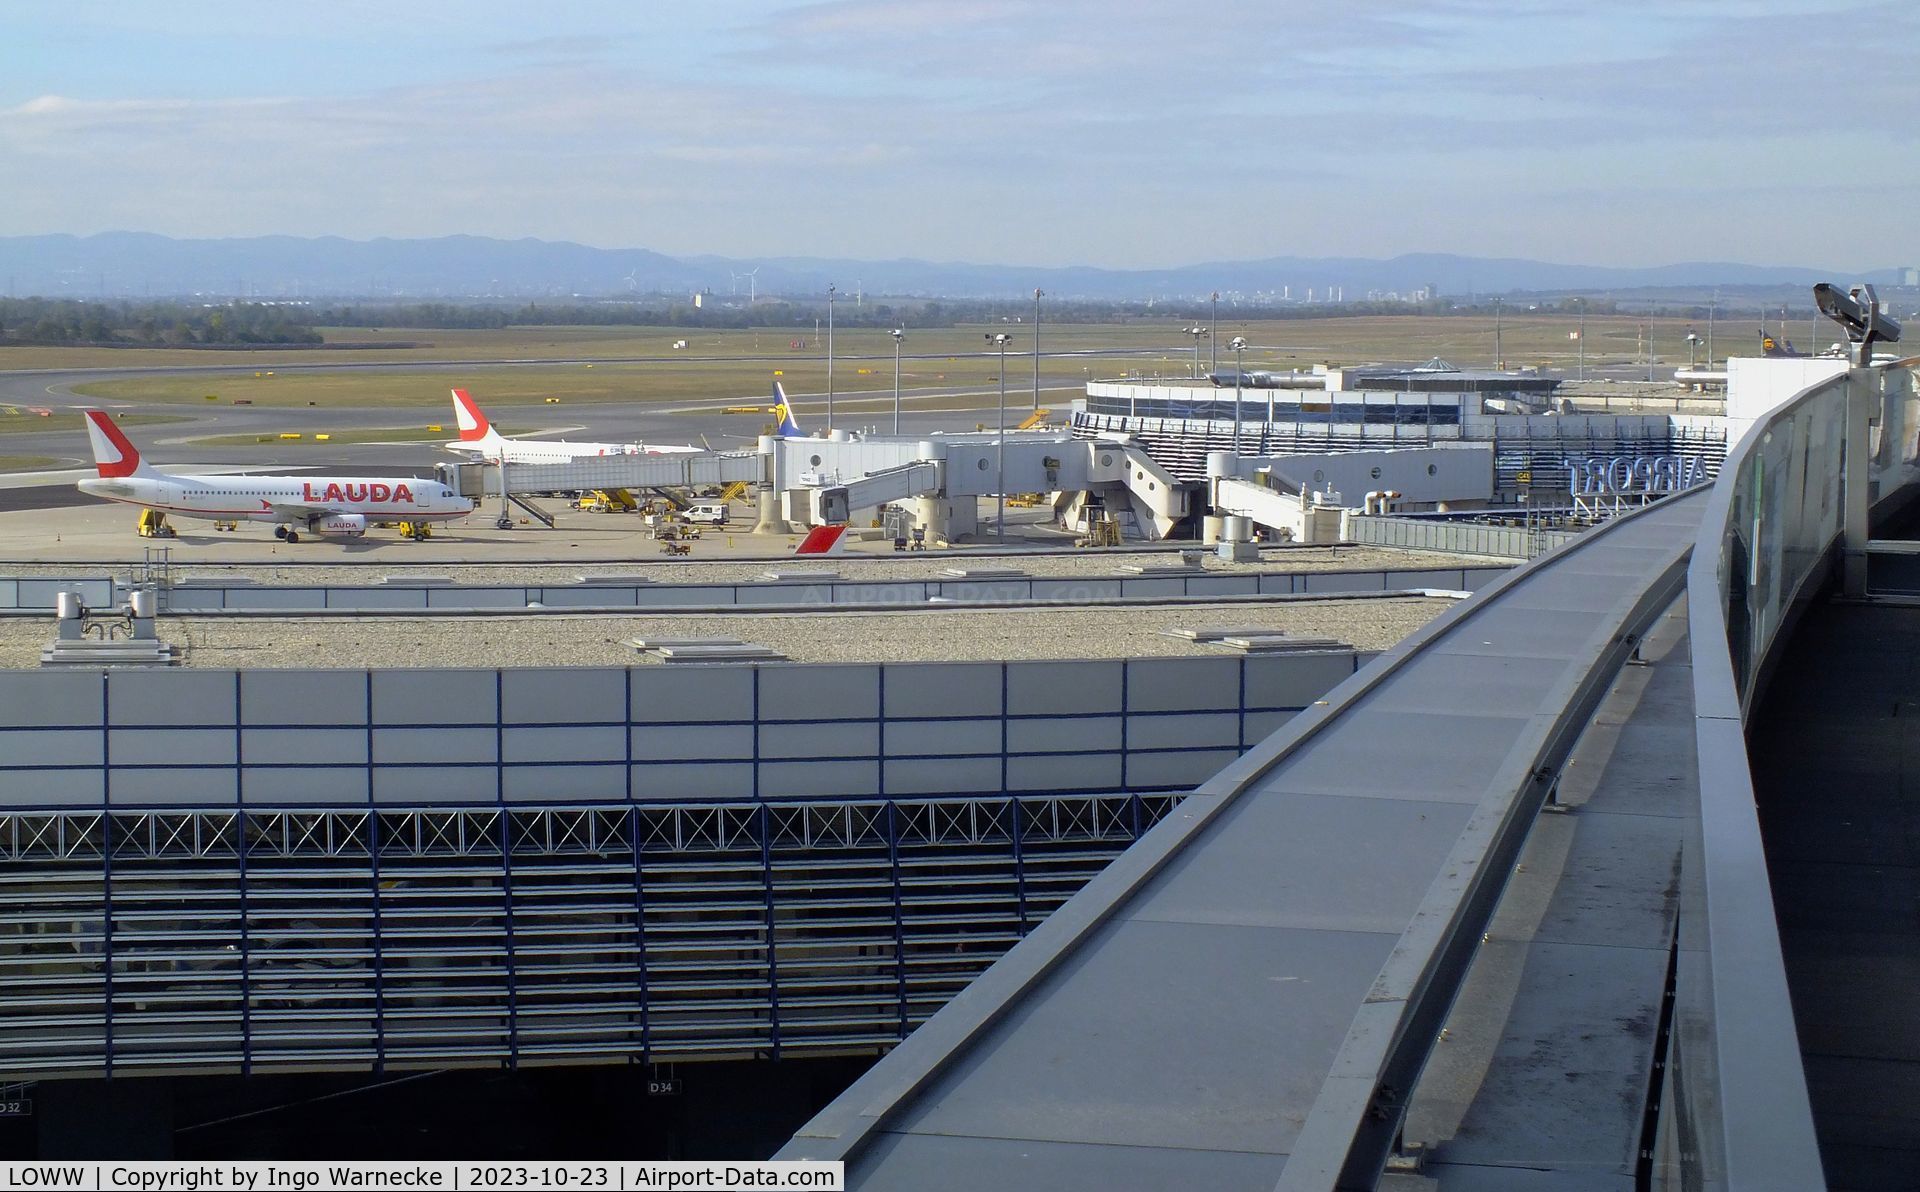 Vienna International Airport, Vienna Austria (LOWW) - gates building C seen behind gates building D at Wien airport